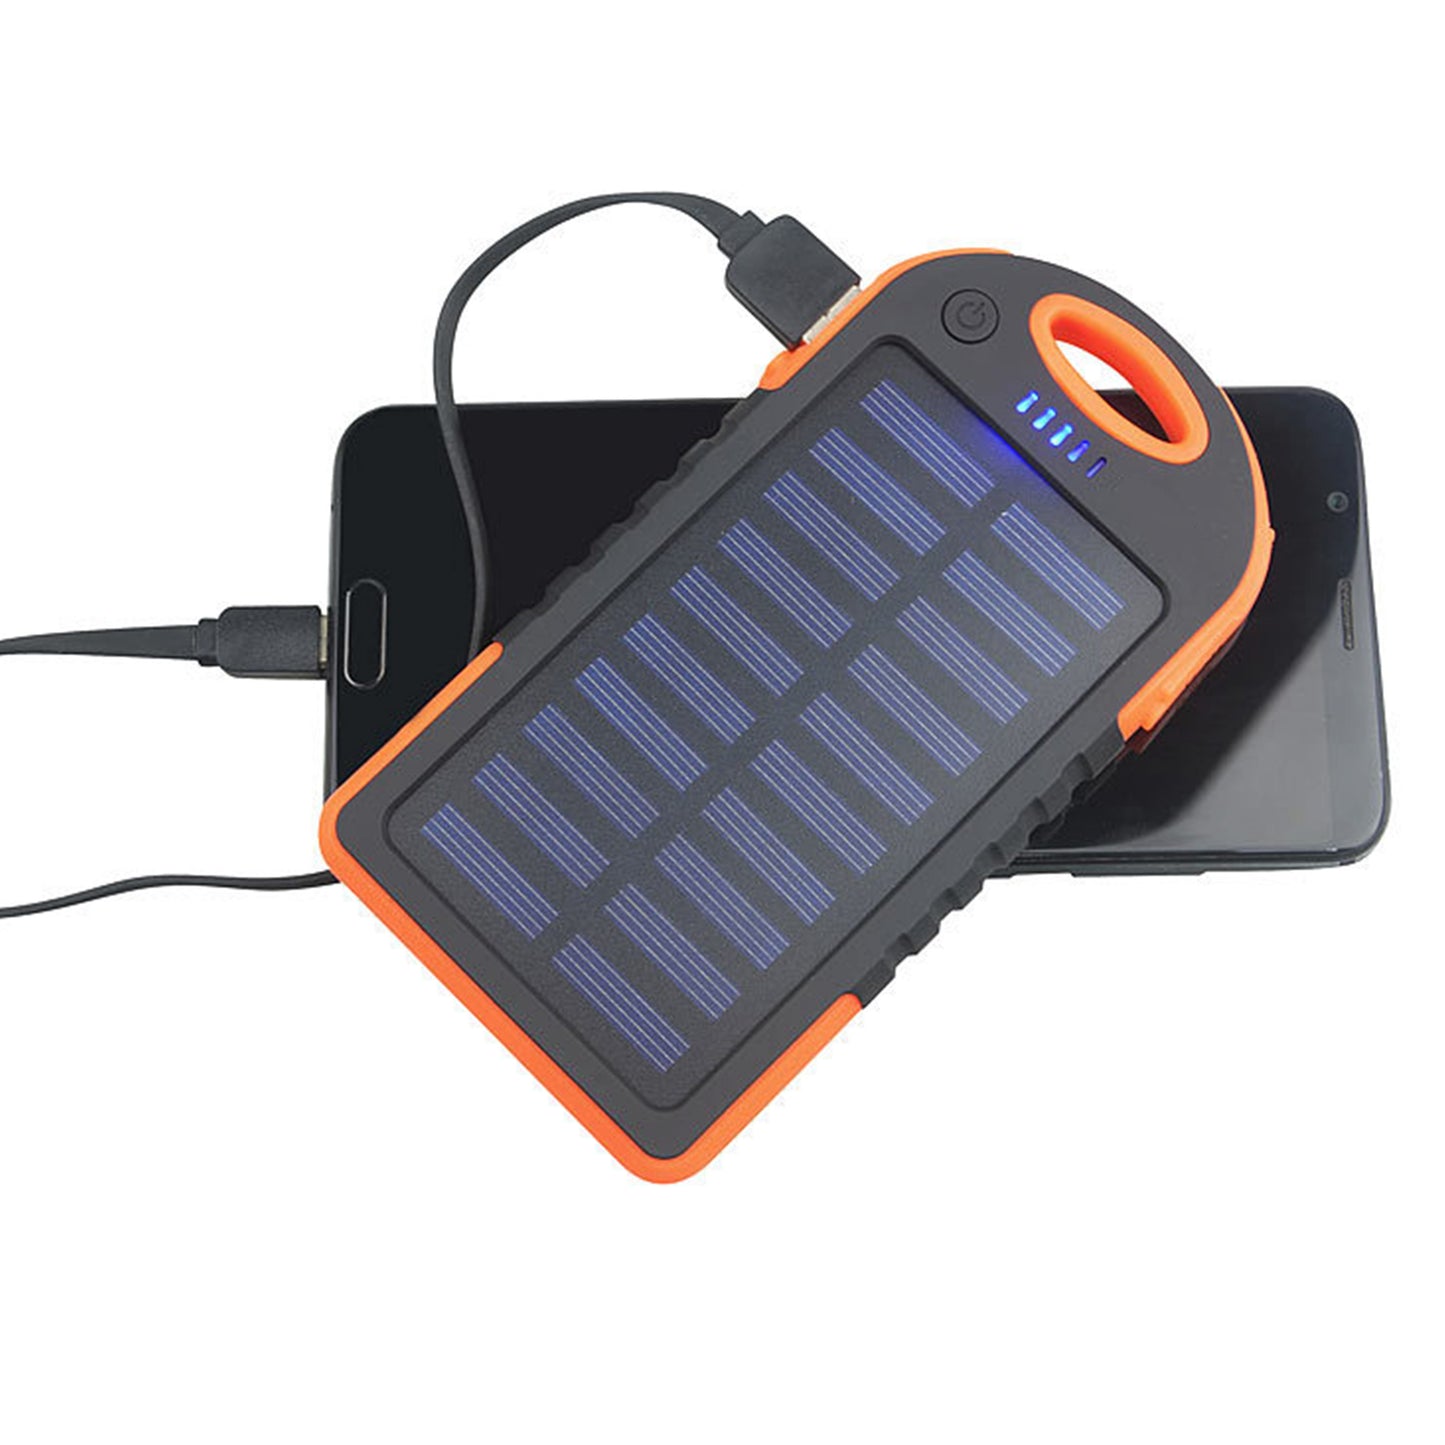 Solar Powerbank Premium - Überall deine Geräte laden - Testsieger